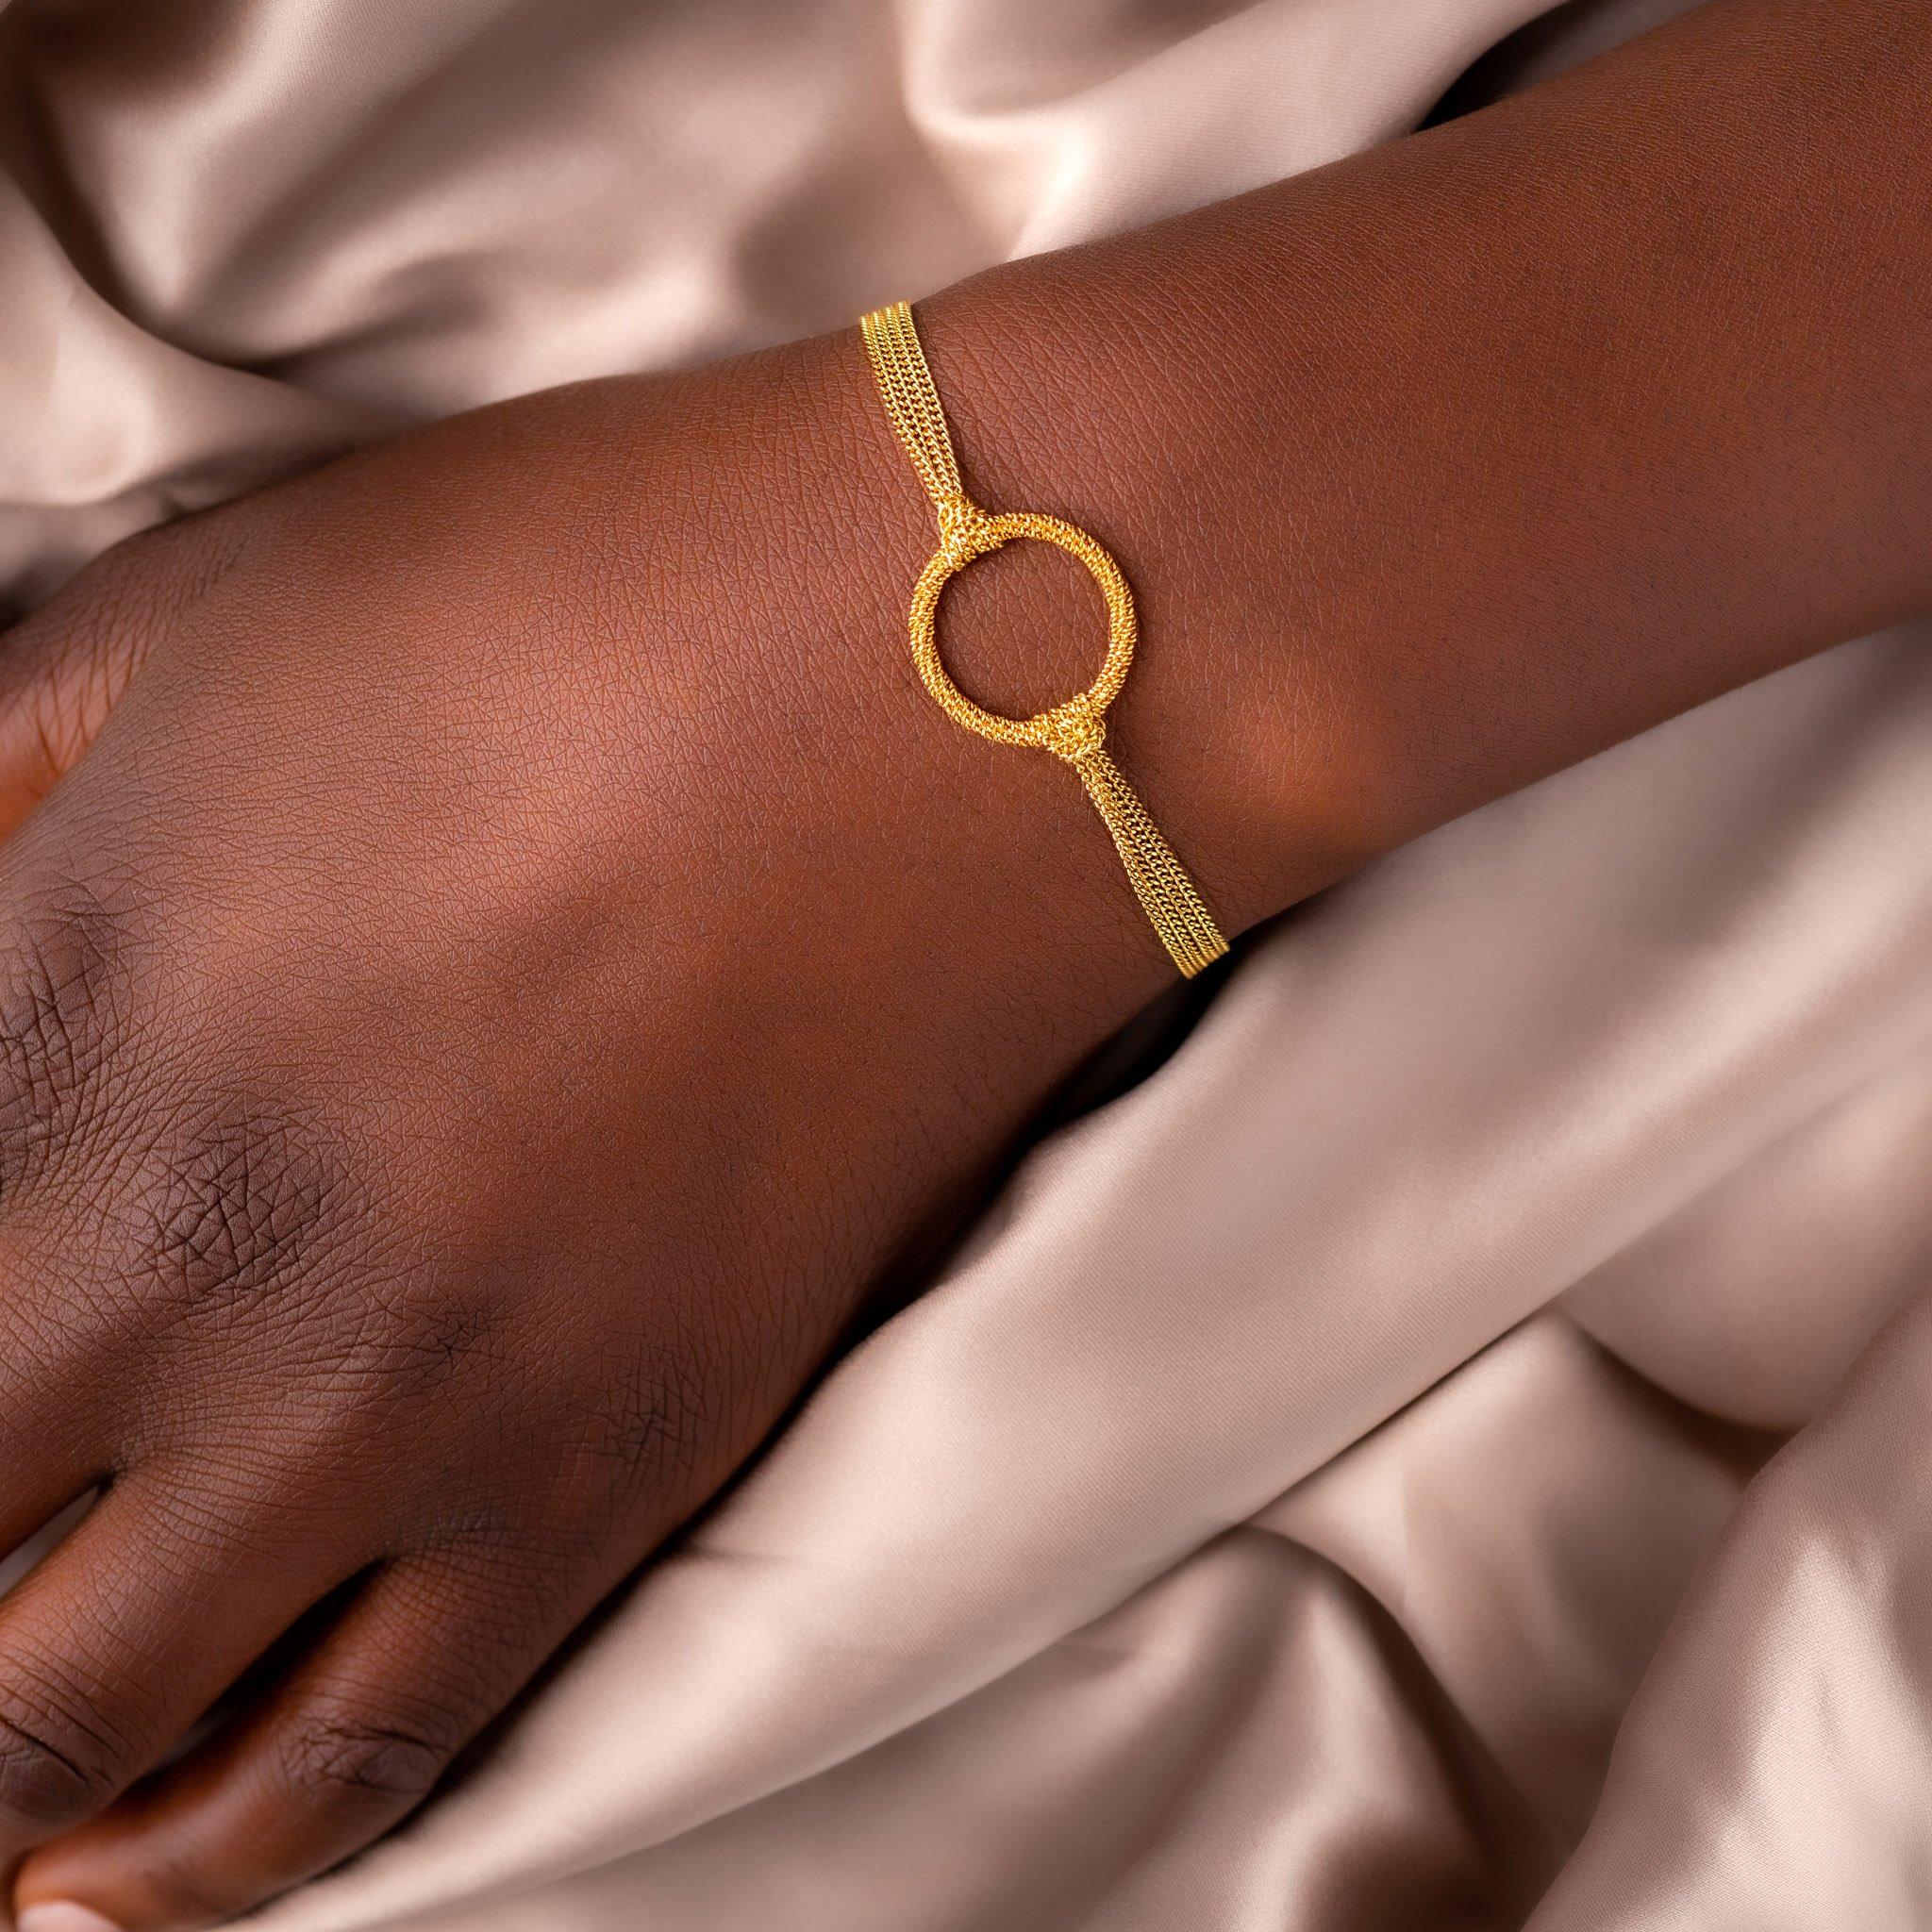 Dieses täuschend einfache Armband hat ein Geheimnis: Die Glieder seiner handgefertigten, diamantgeschliffenen 18-karätigen Gelbgoldketten reflektieren das Umgebungslicht so brillant, dass Sie glauben werden, Sie trügen schlanke Flüsse aus